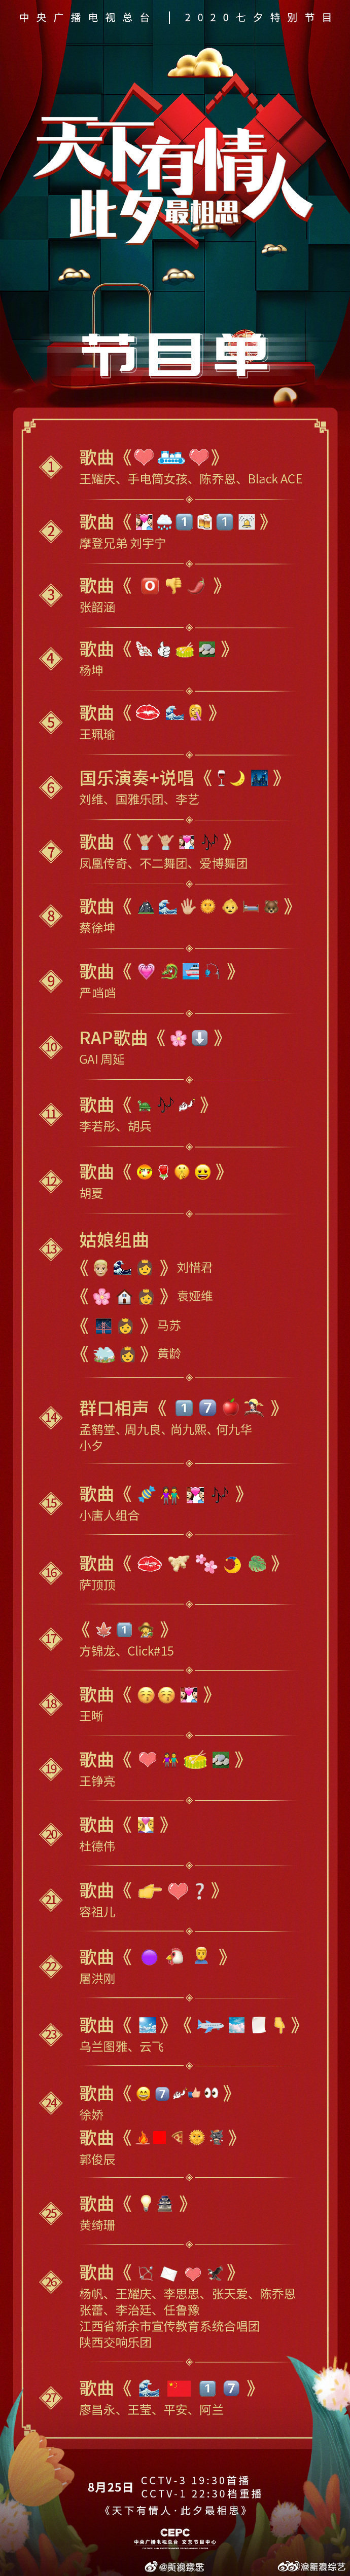 央视用emoji发布七夕晚会节目单，抽象文化登上大雅之堂